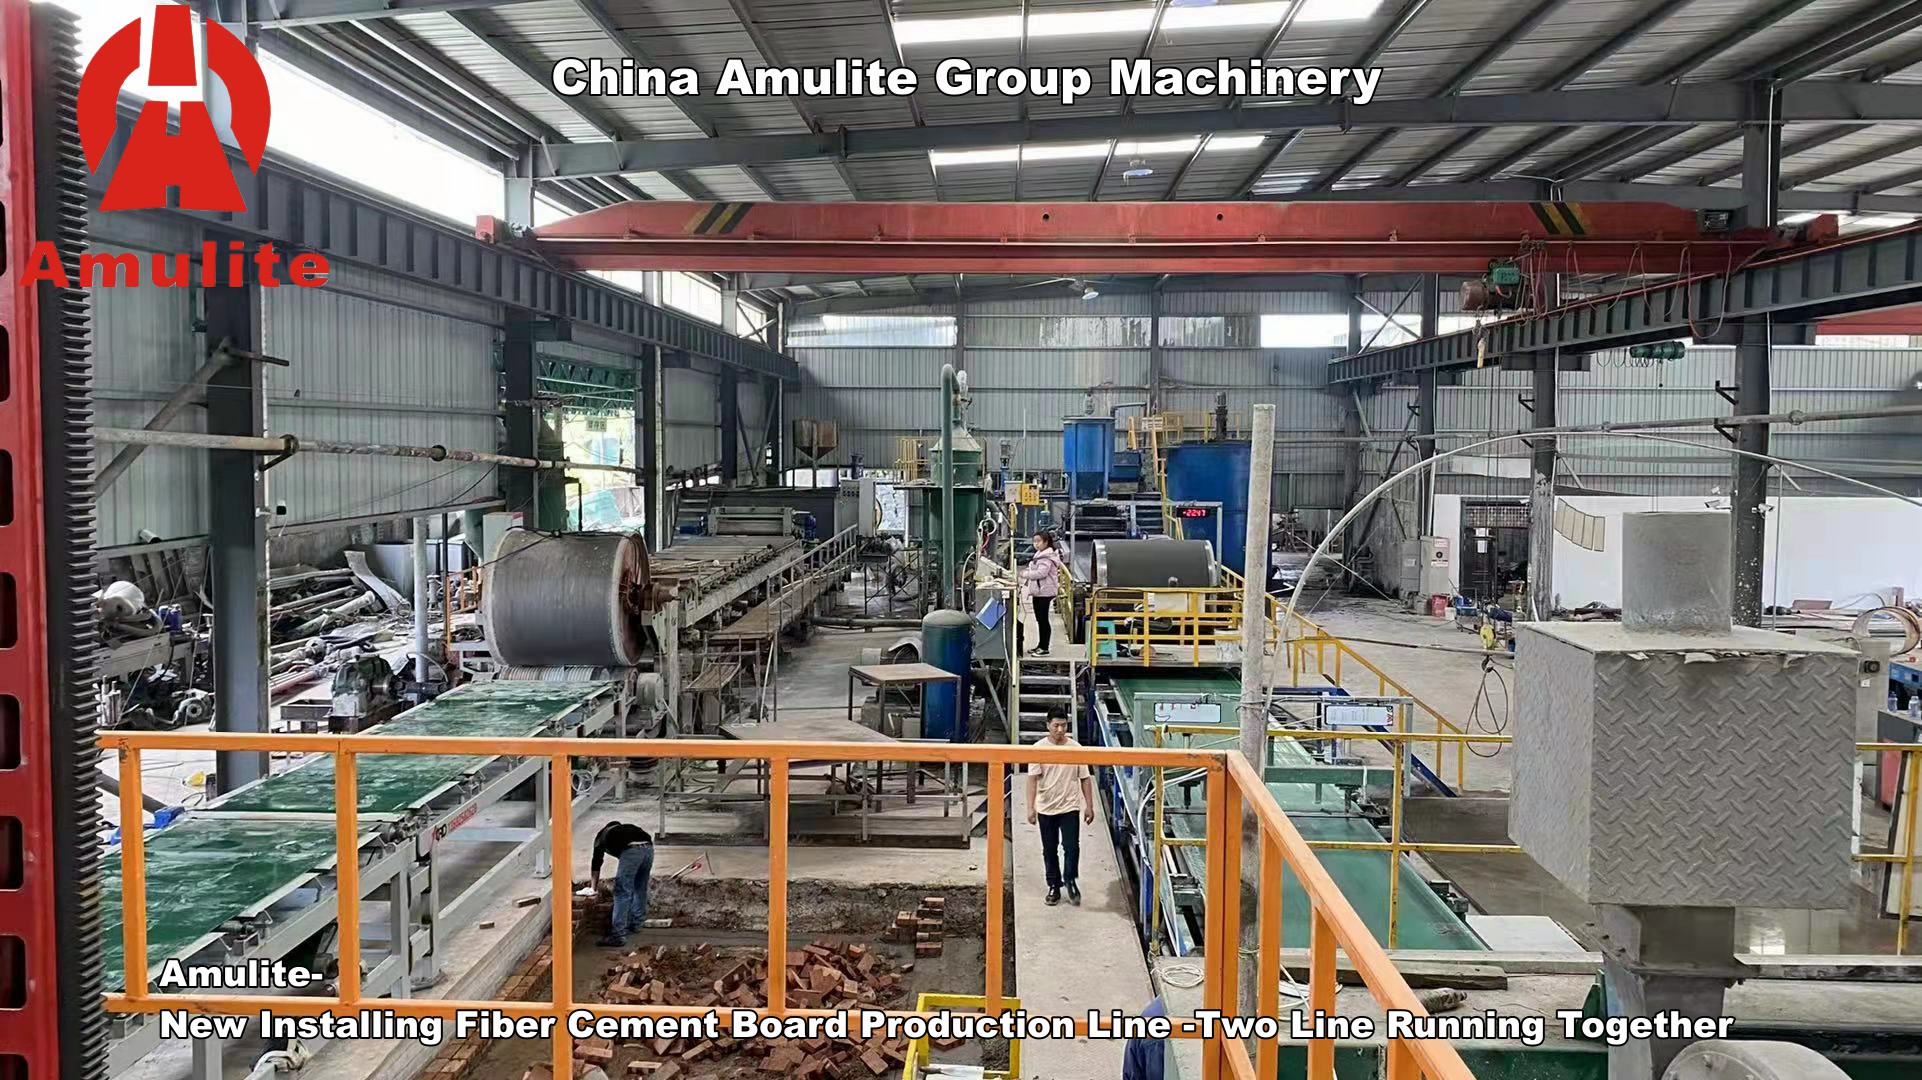 Amulite-New Kukhazikitsa Fiber Cement Board Production Line -Mizere Yawiri Kuthamanga Pamodzi